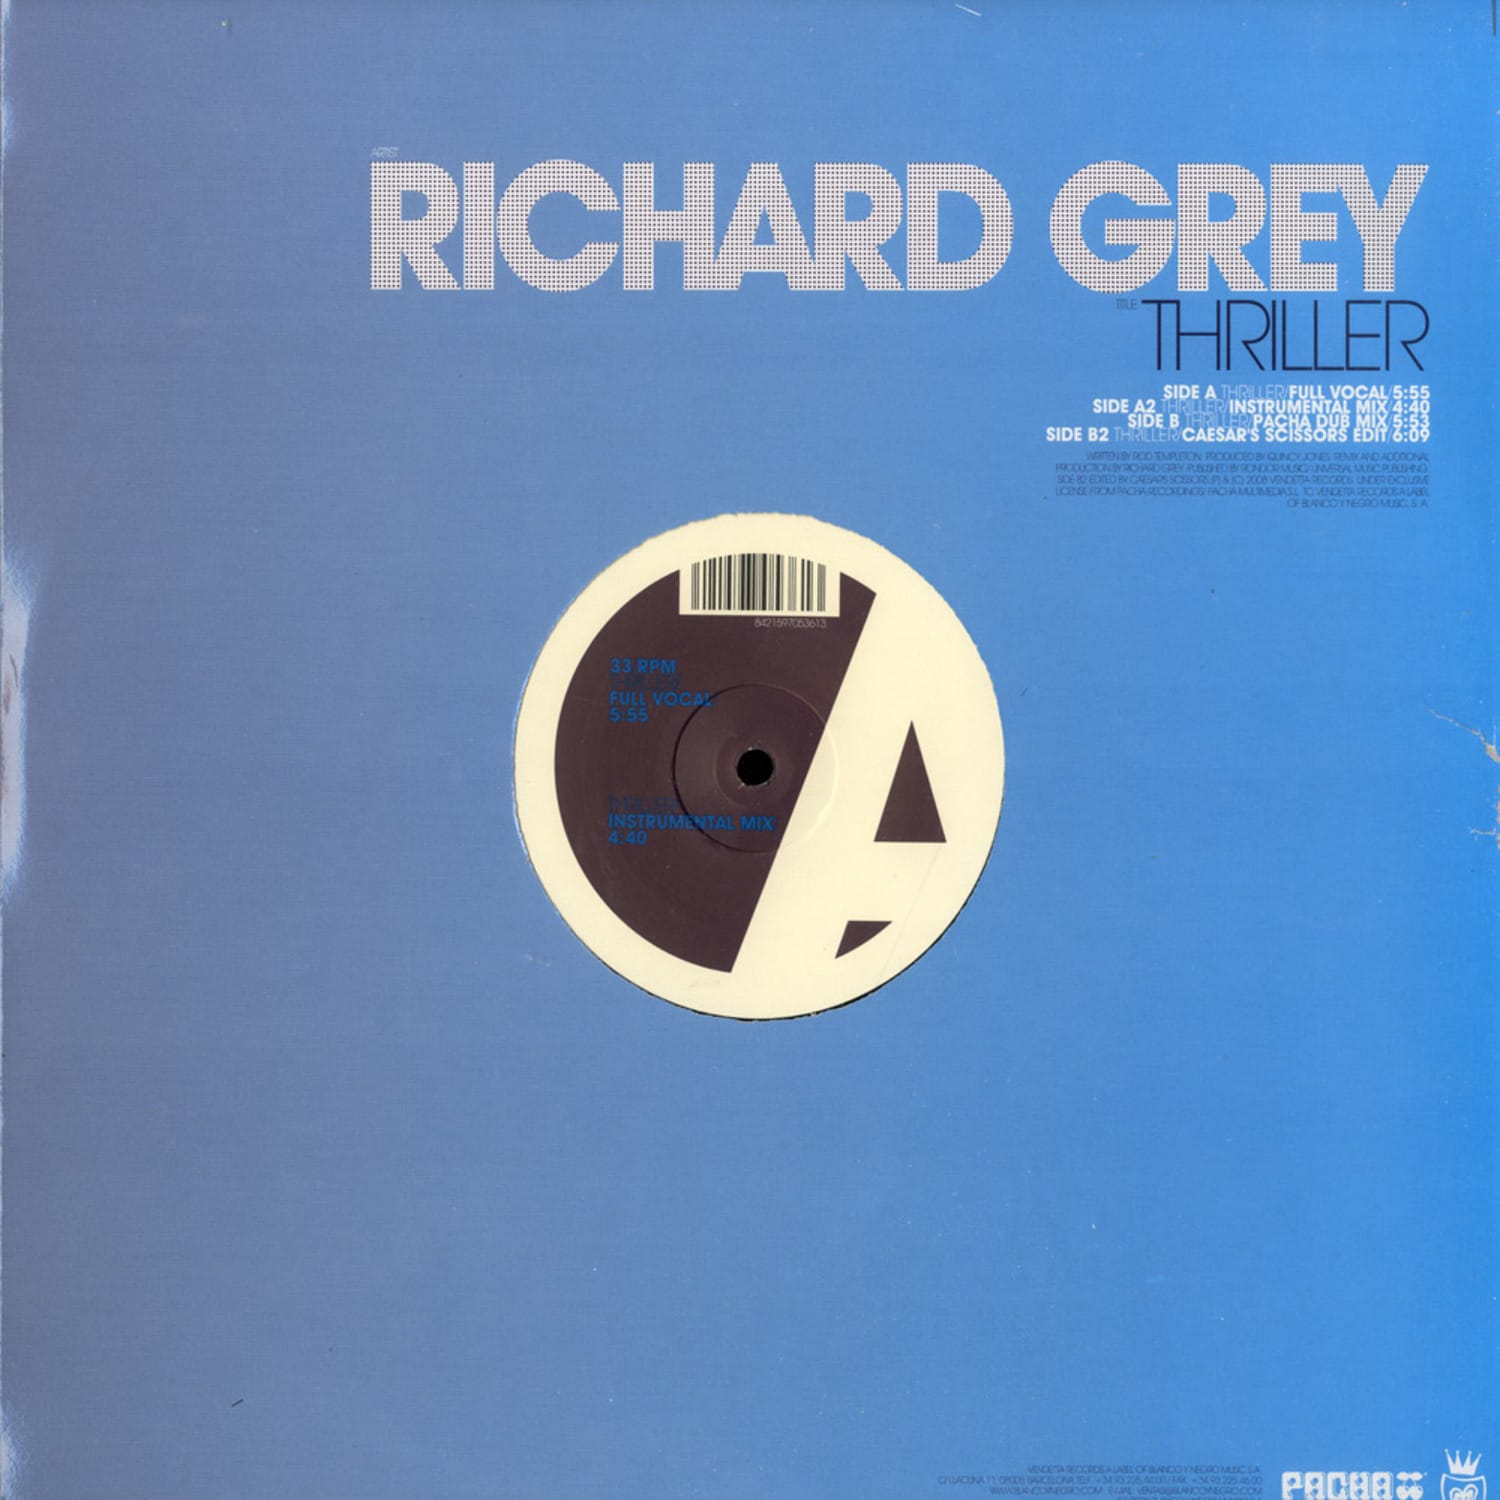 Richard Grey - THRILLER